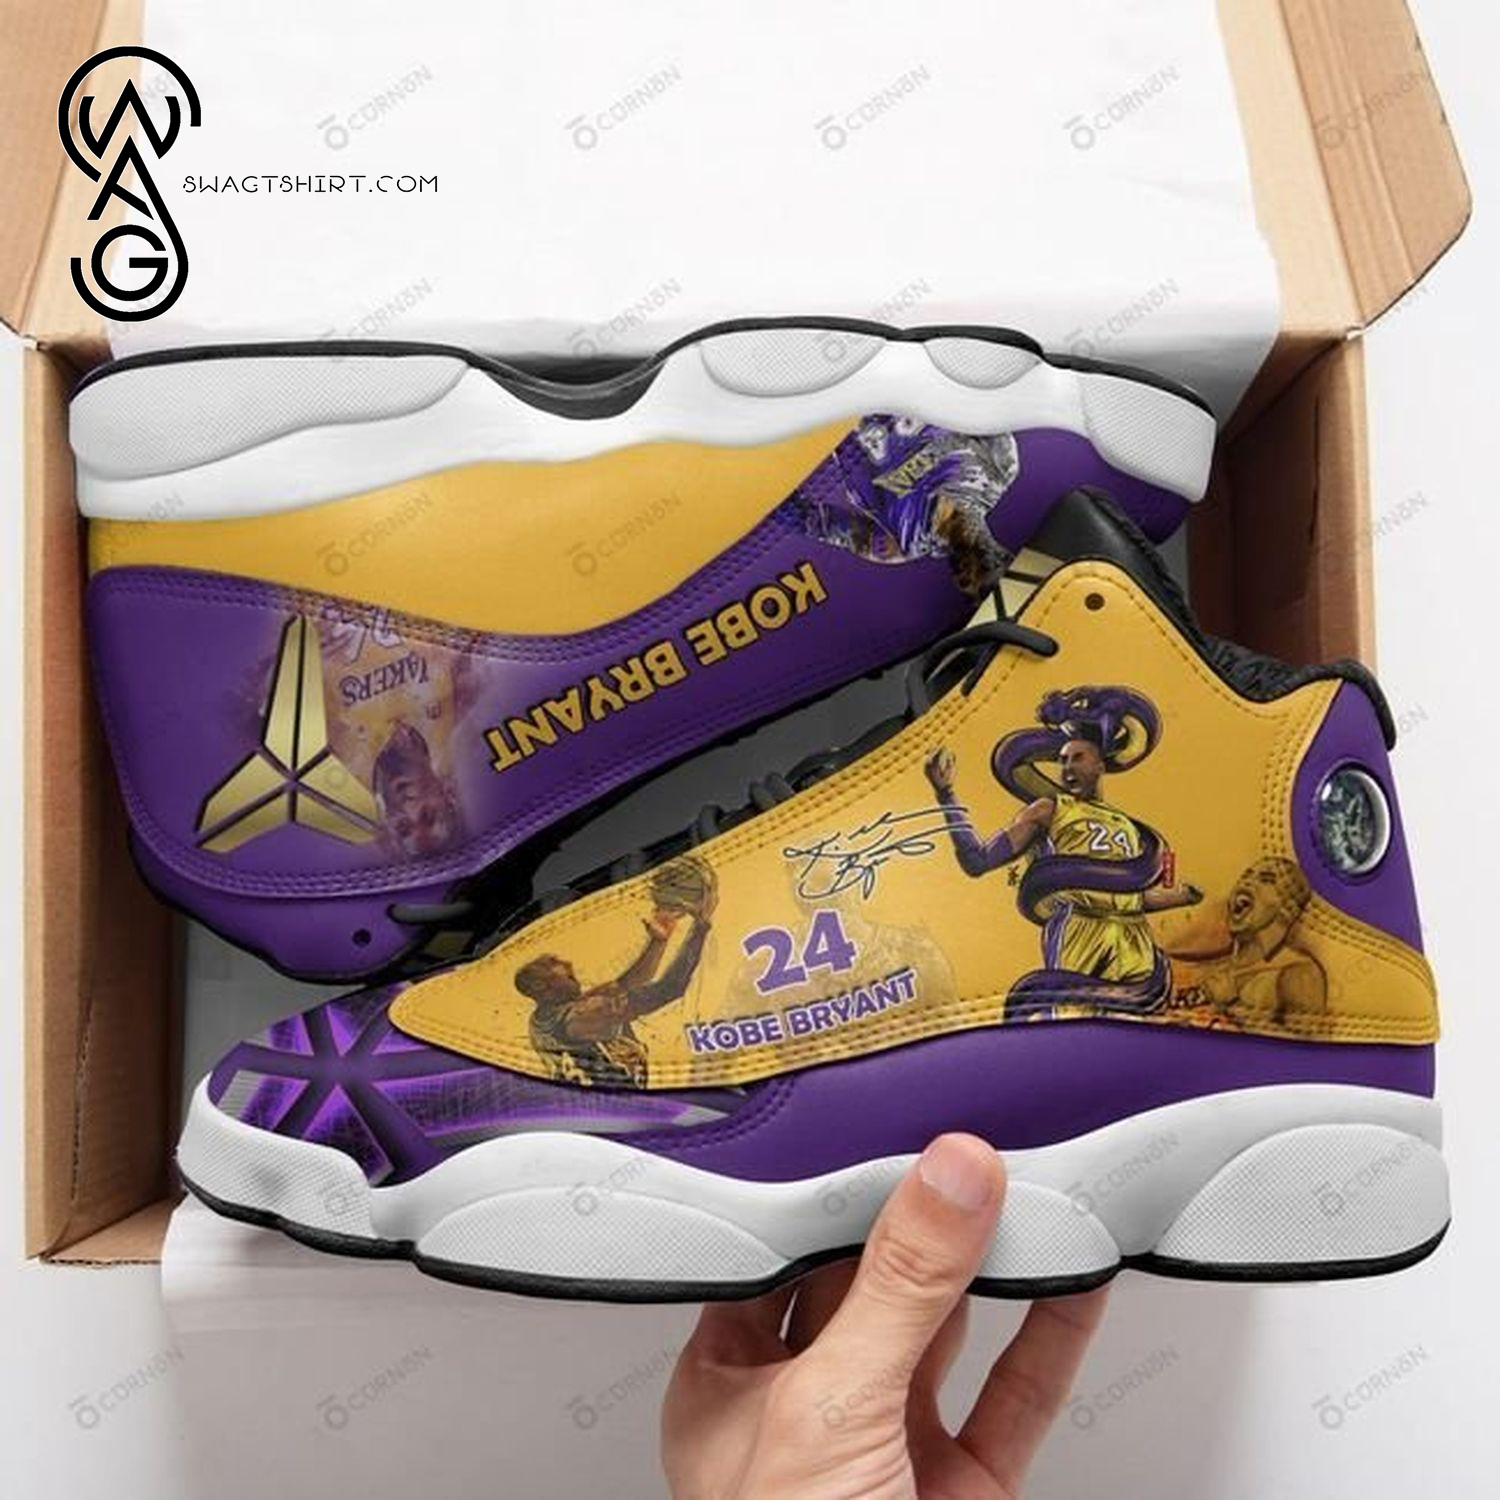 Kobe Bryant Basketball Air Jordan 13 Shoes